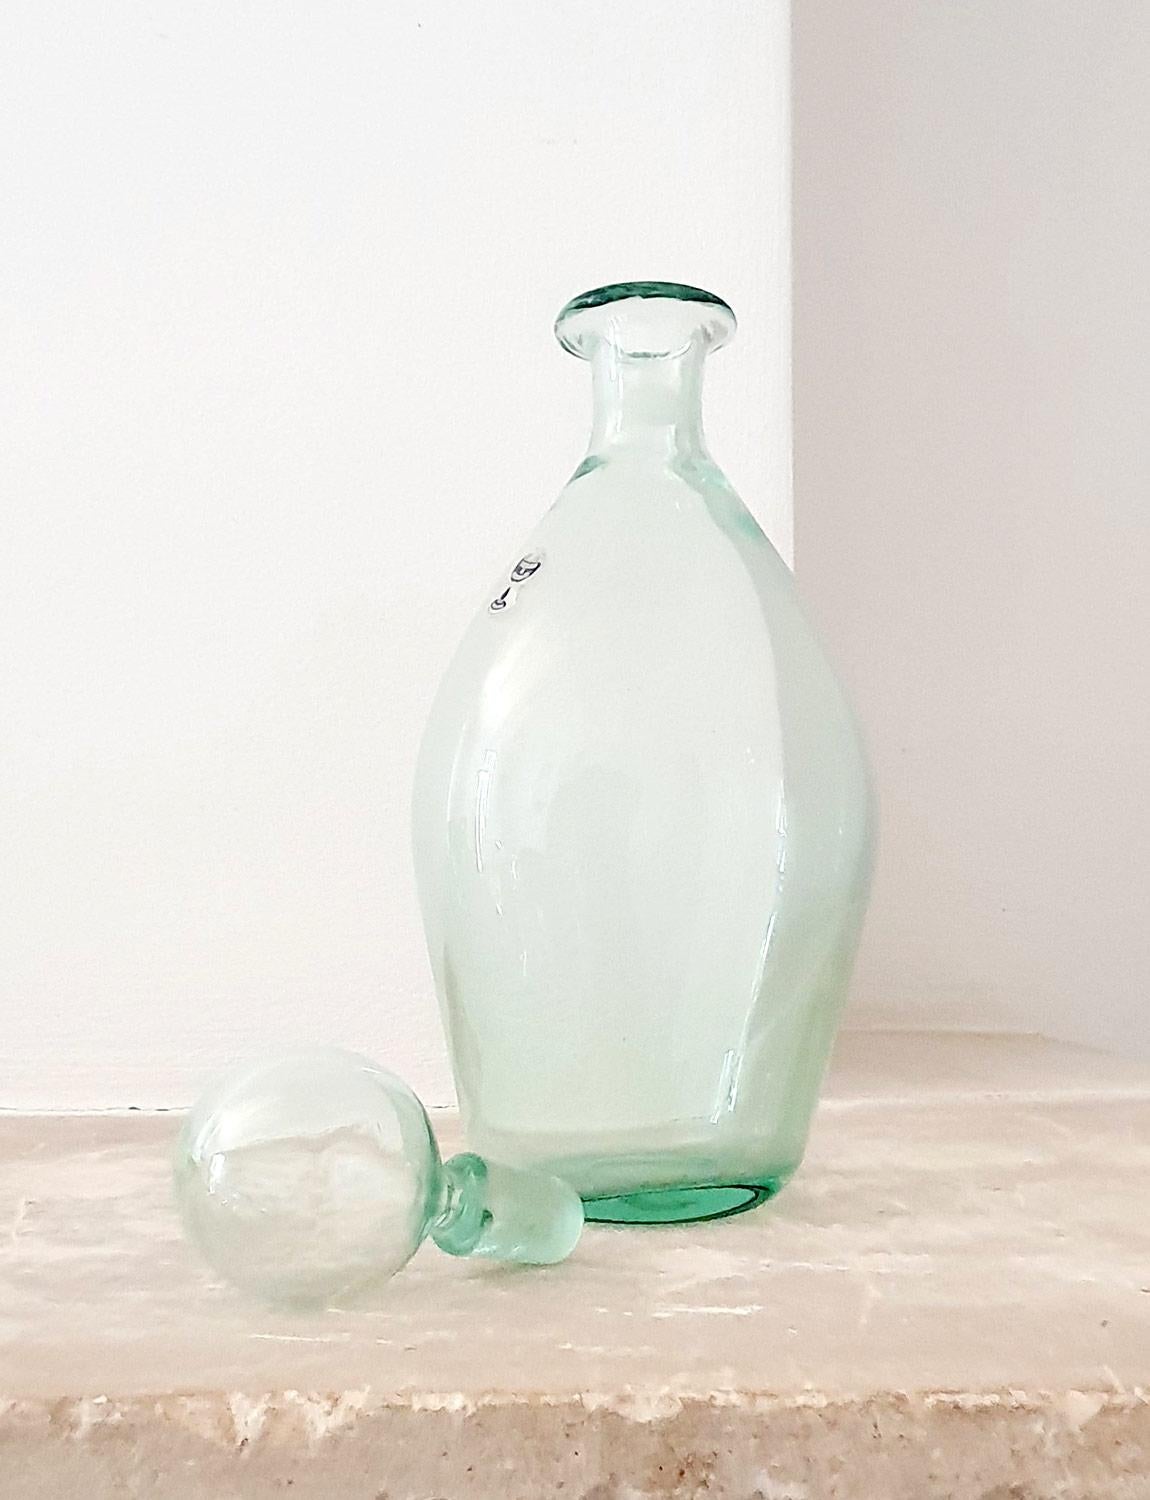 Eine schöne helle und klare blassgrüne mundgeblasene Flasche / Dekanter mit mundgeblasenen Stopfen von der venezianischen Ofen, Nason Moretti. Die Flasche trägt noch immer den Nason Moretti-Aufkleber. Es ist ein schönes Stück in ausgezeichnetem